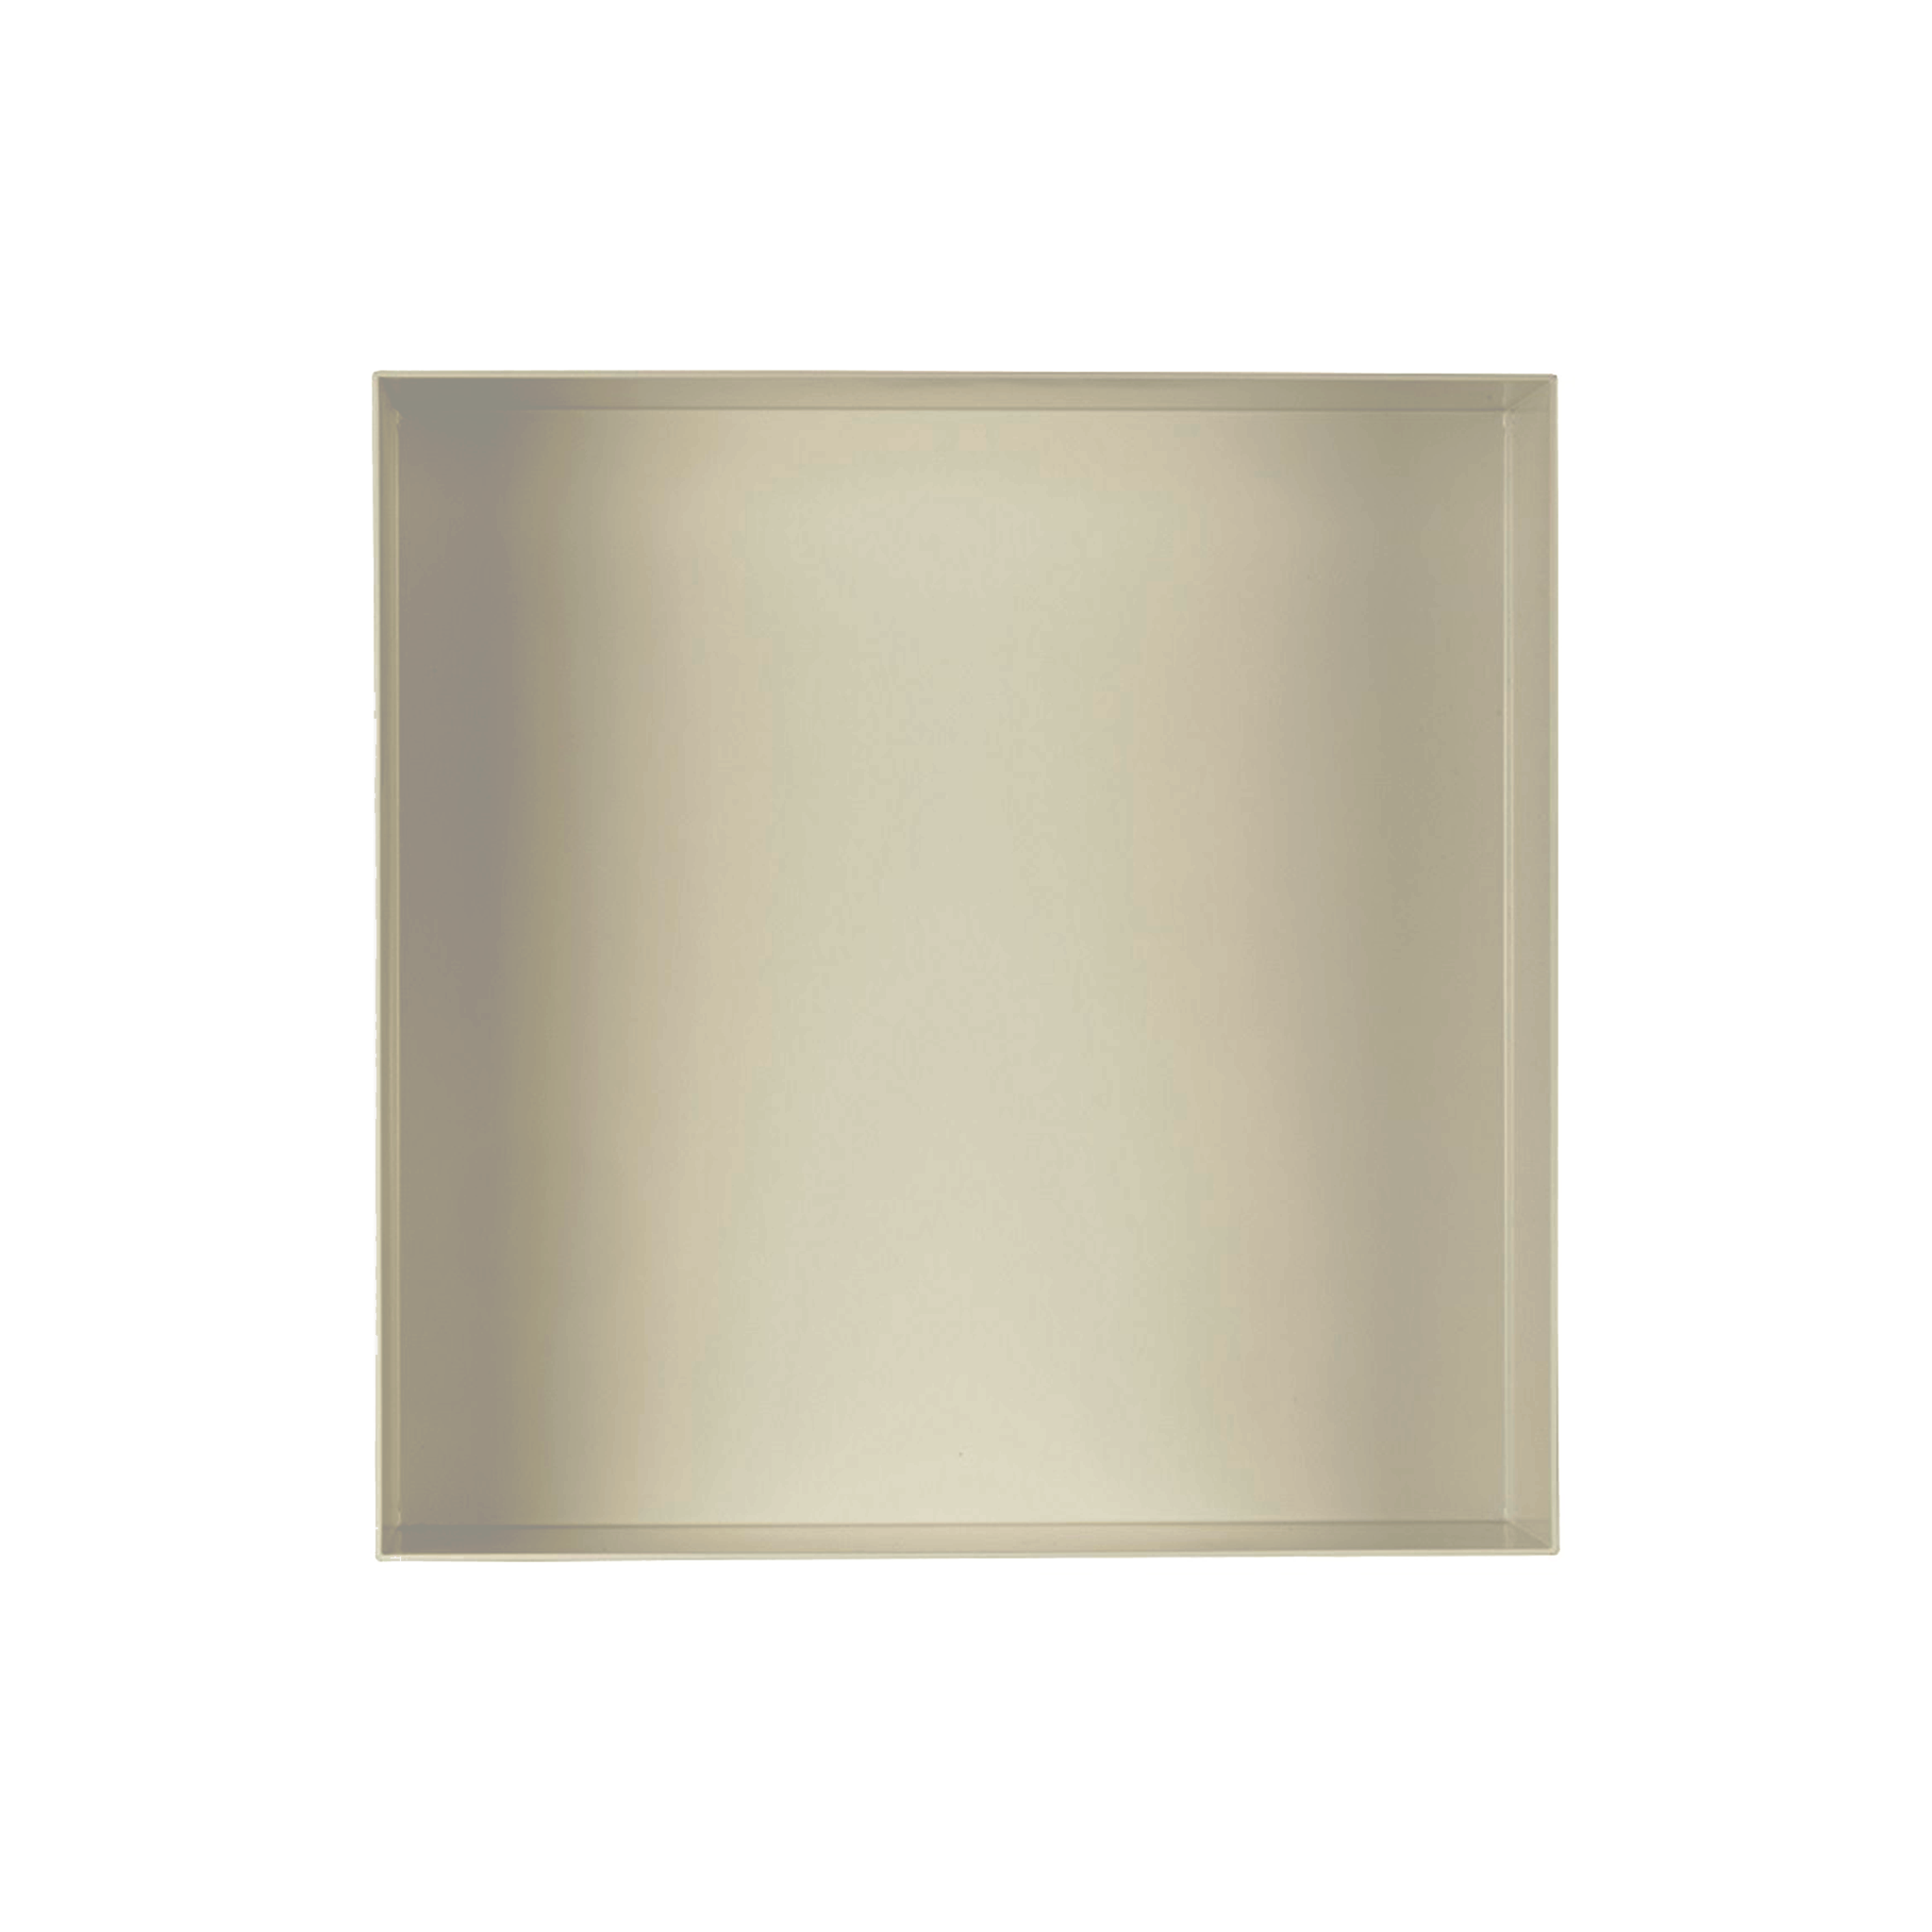 Valli Home – V-Box, Nicchia portaoggetti in Metallo smaltato color Grigio Chiarissimo KK62, Misura 30X30 P. 10 cm – V-BOX.MLLO.30X30.62